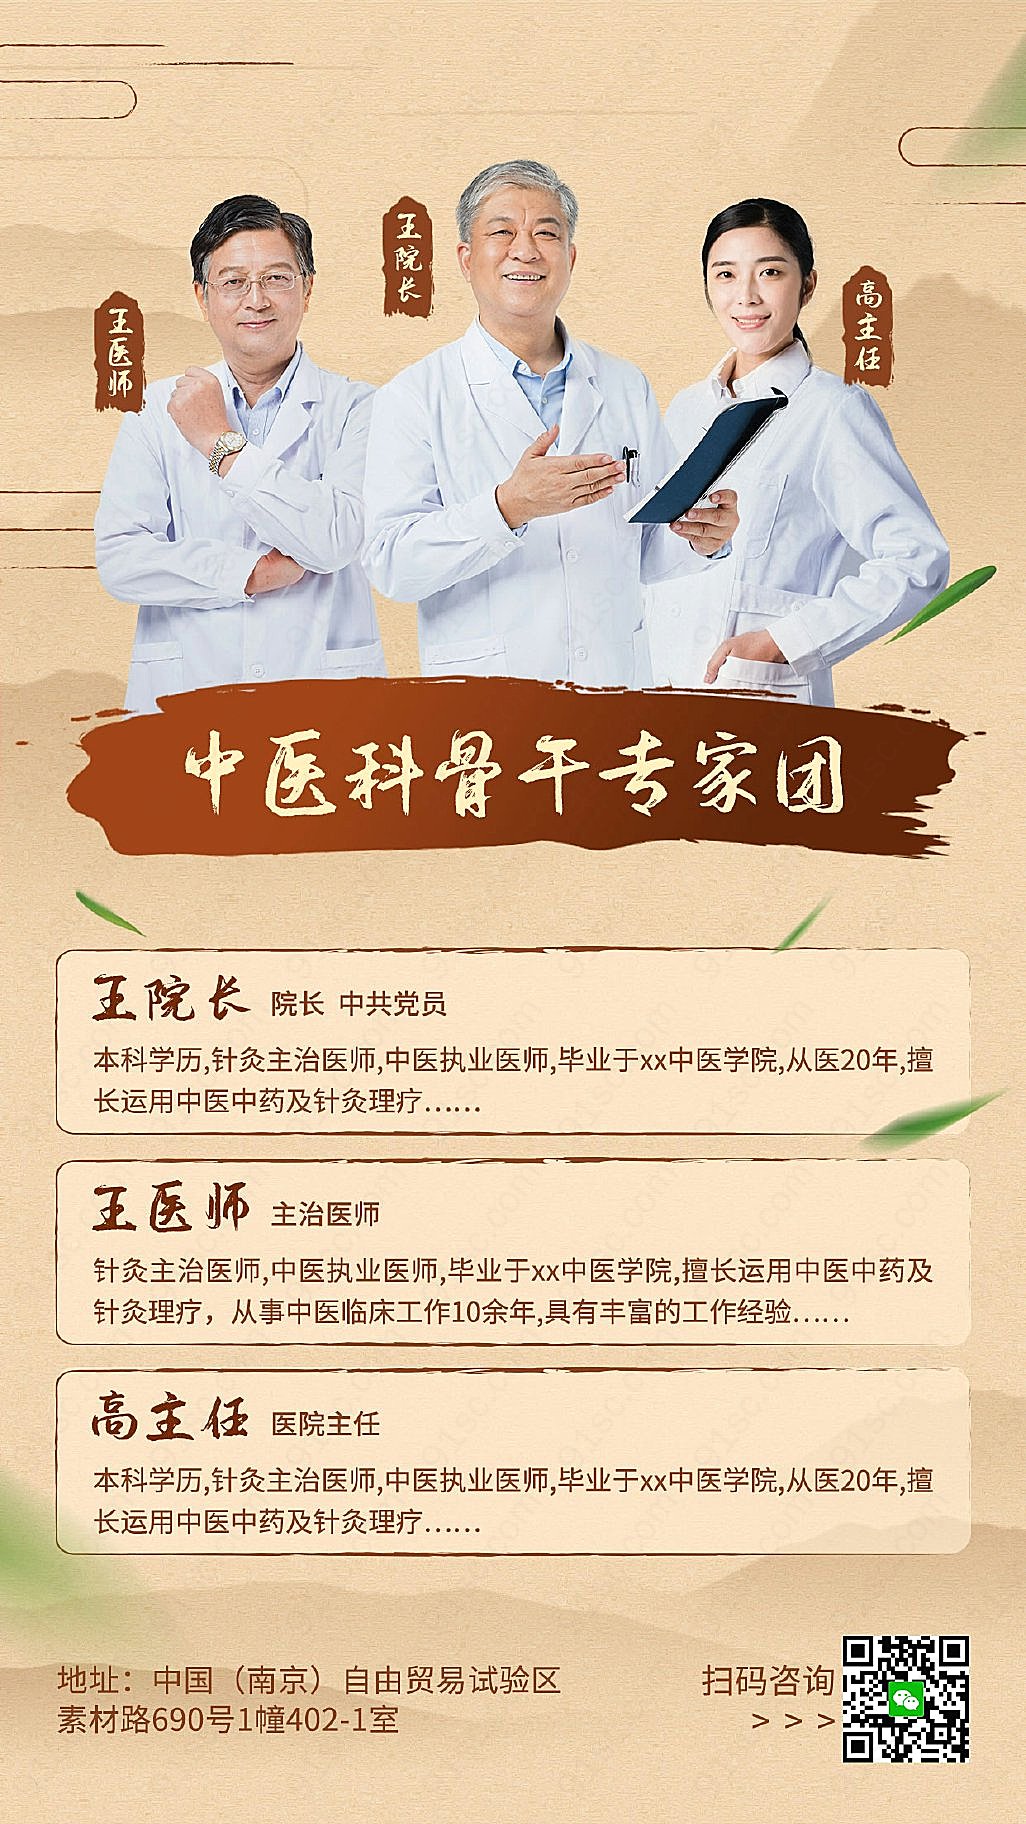 中医专家团队介绍手机海报艾灸推拿理疗养生